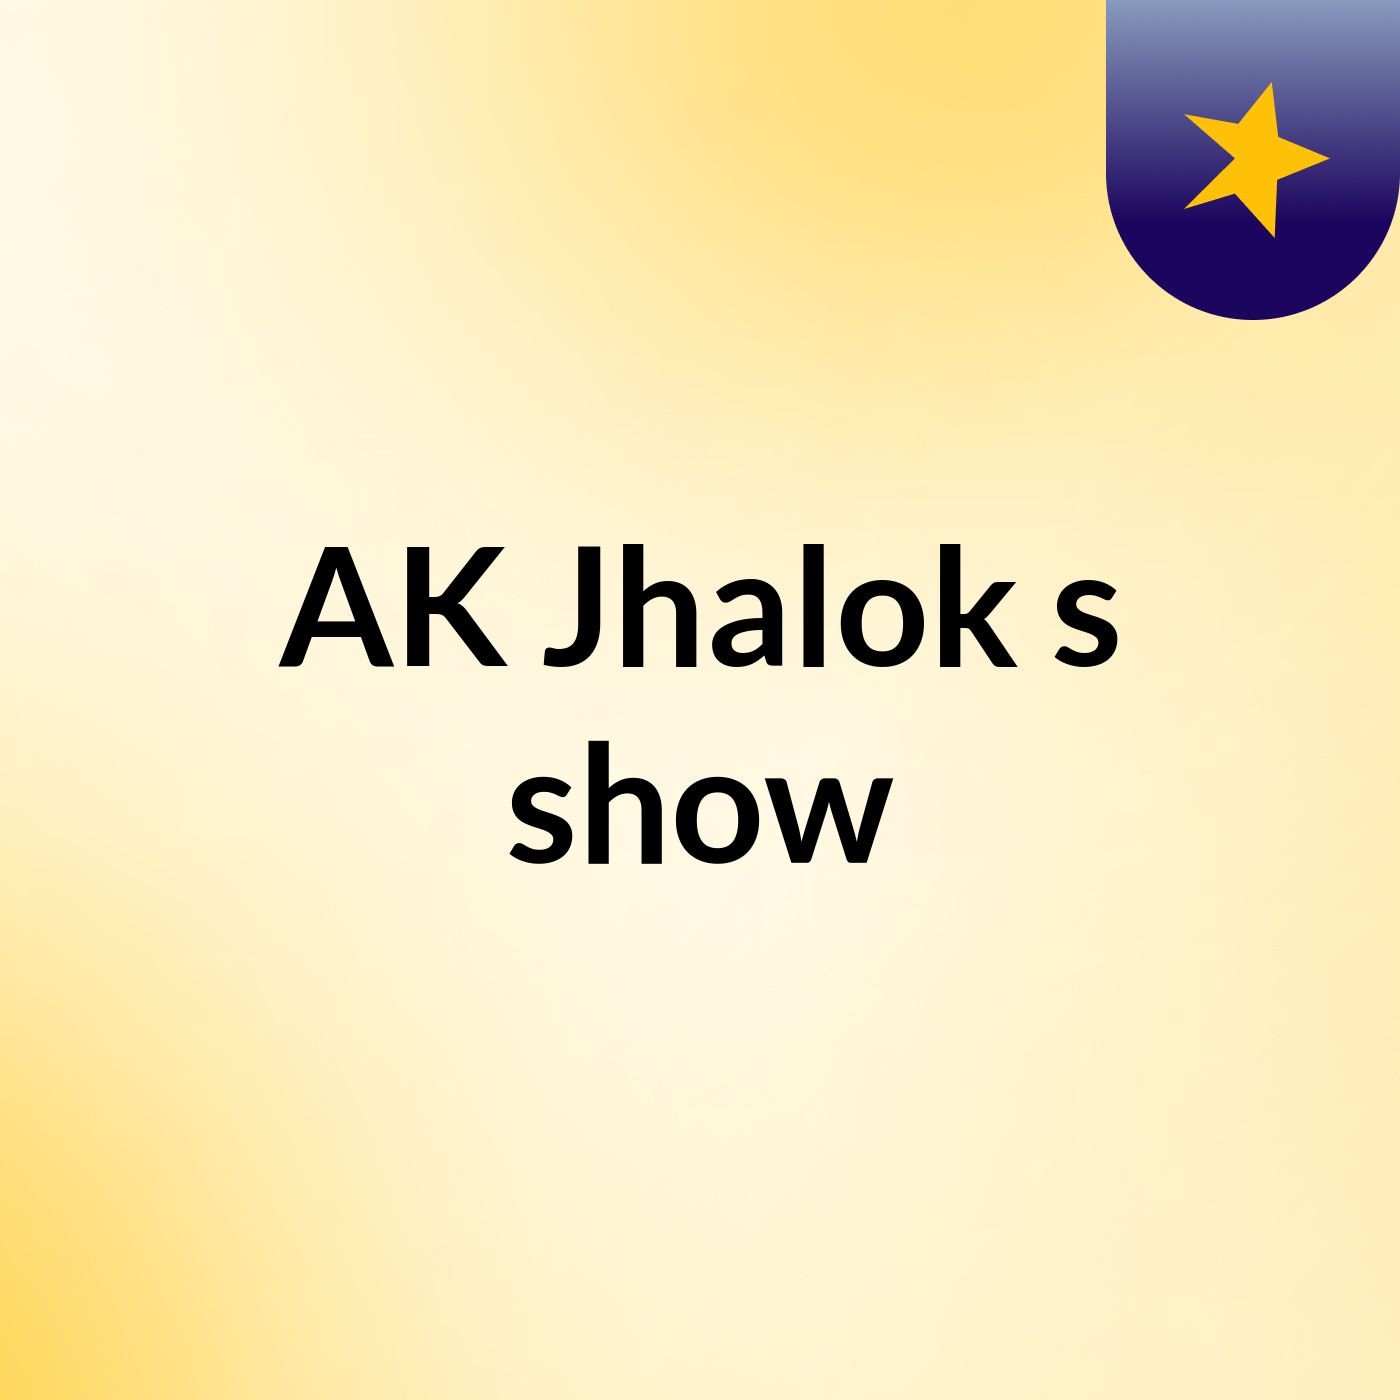 AK Jhalok's show